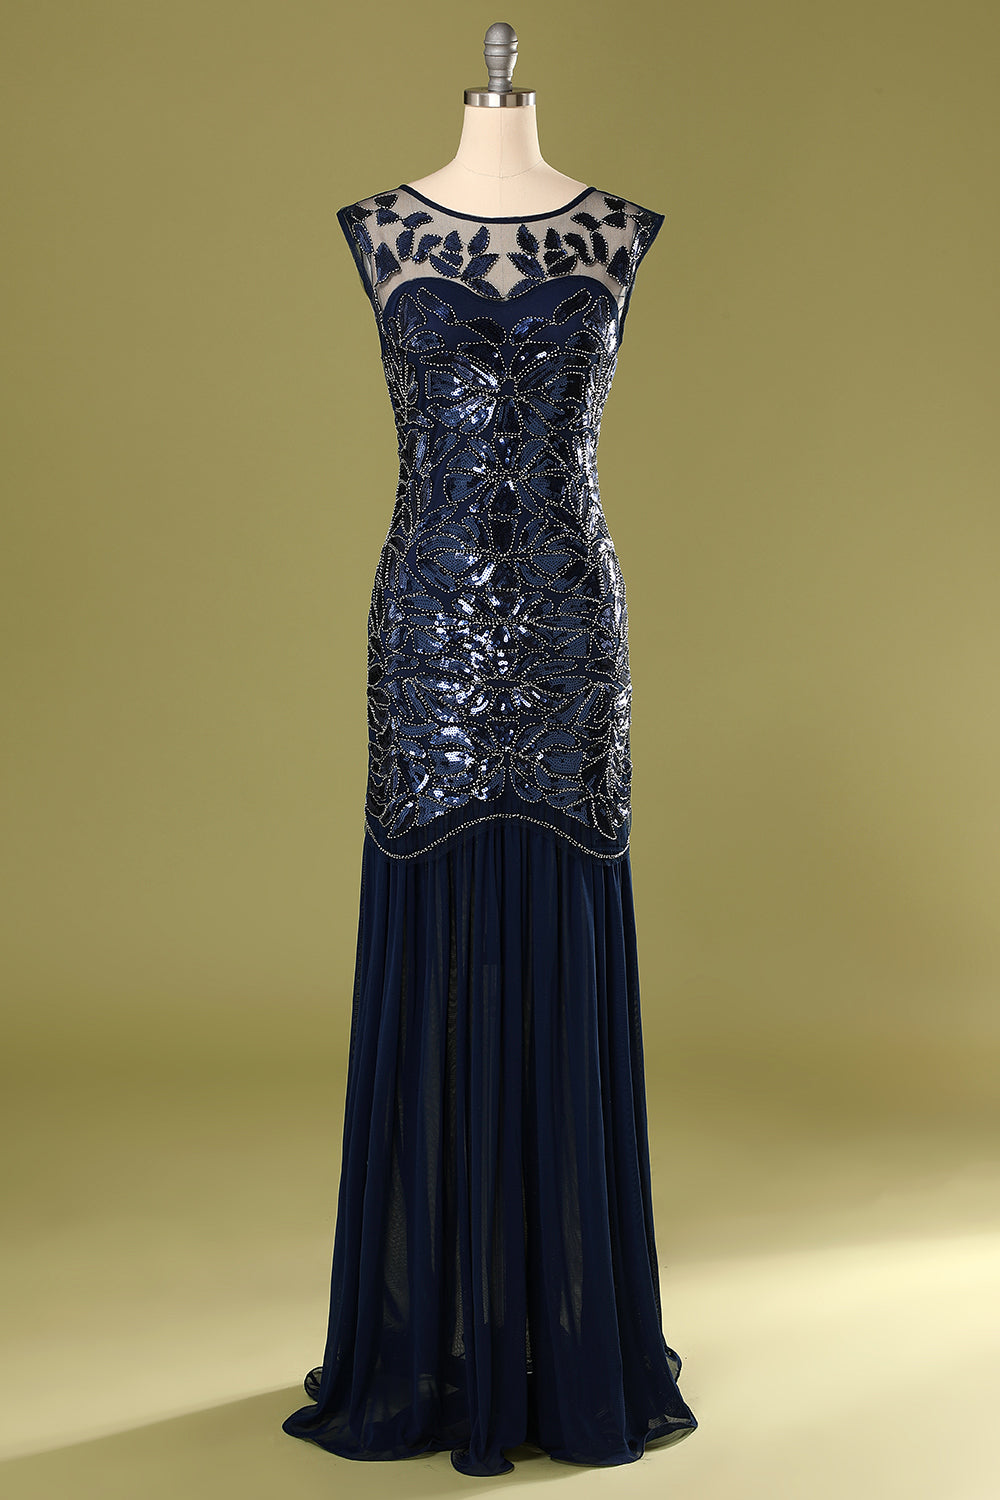 Unique 1920s Dress Ideas (Not Flapper)